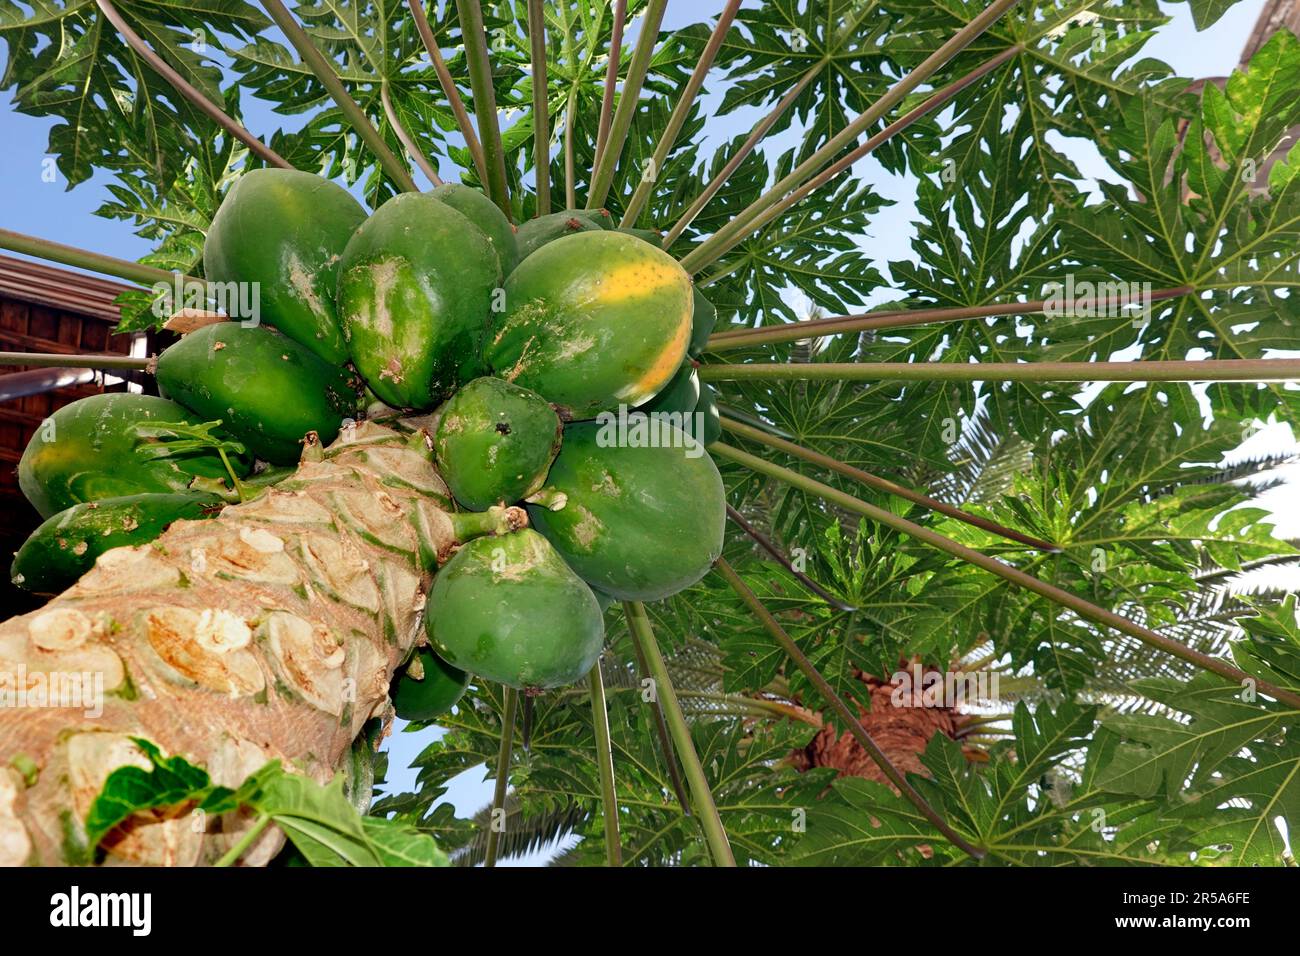 papaya, papaw, paw paw, mamao, tree melon (Carica papaya), papayas on a tree, Canary Islands, Gran Canaria, Las Palmas Stock Photo